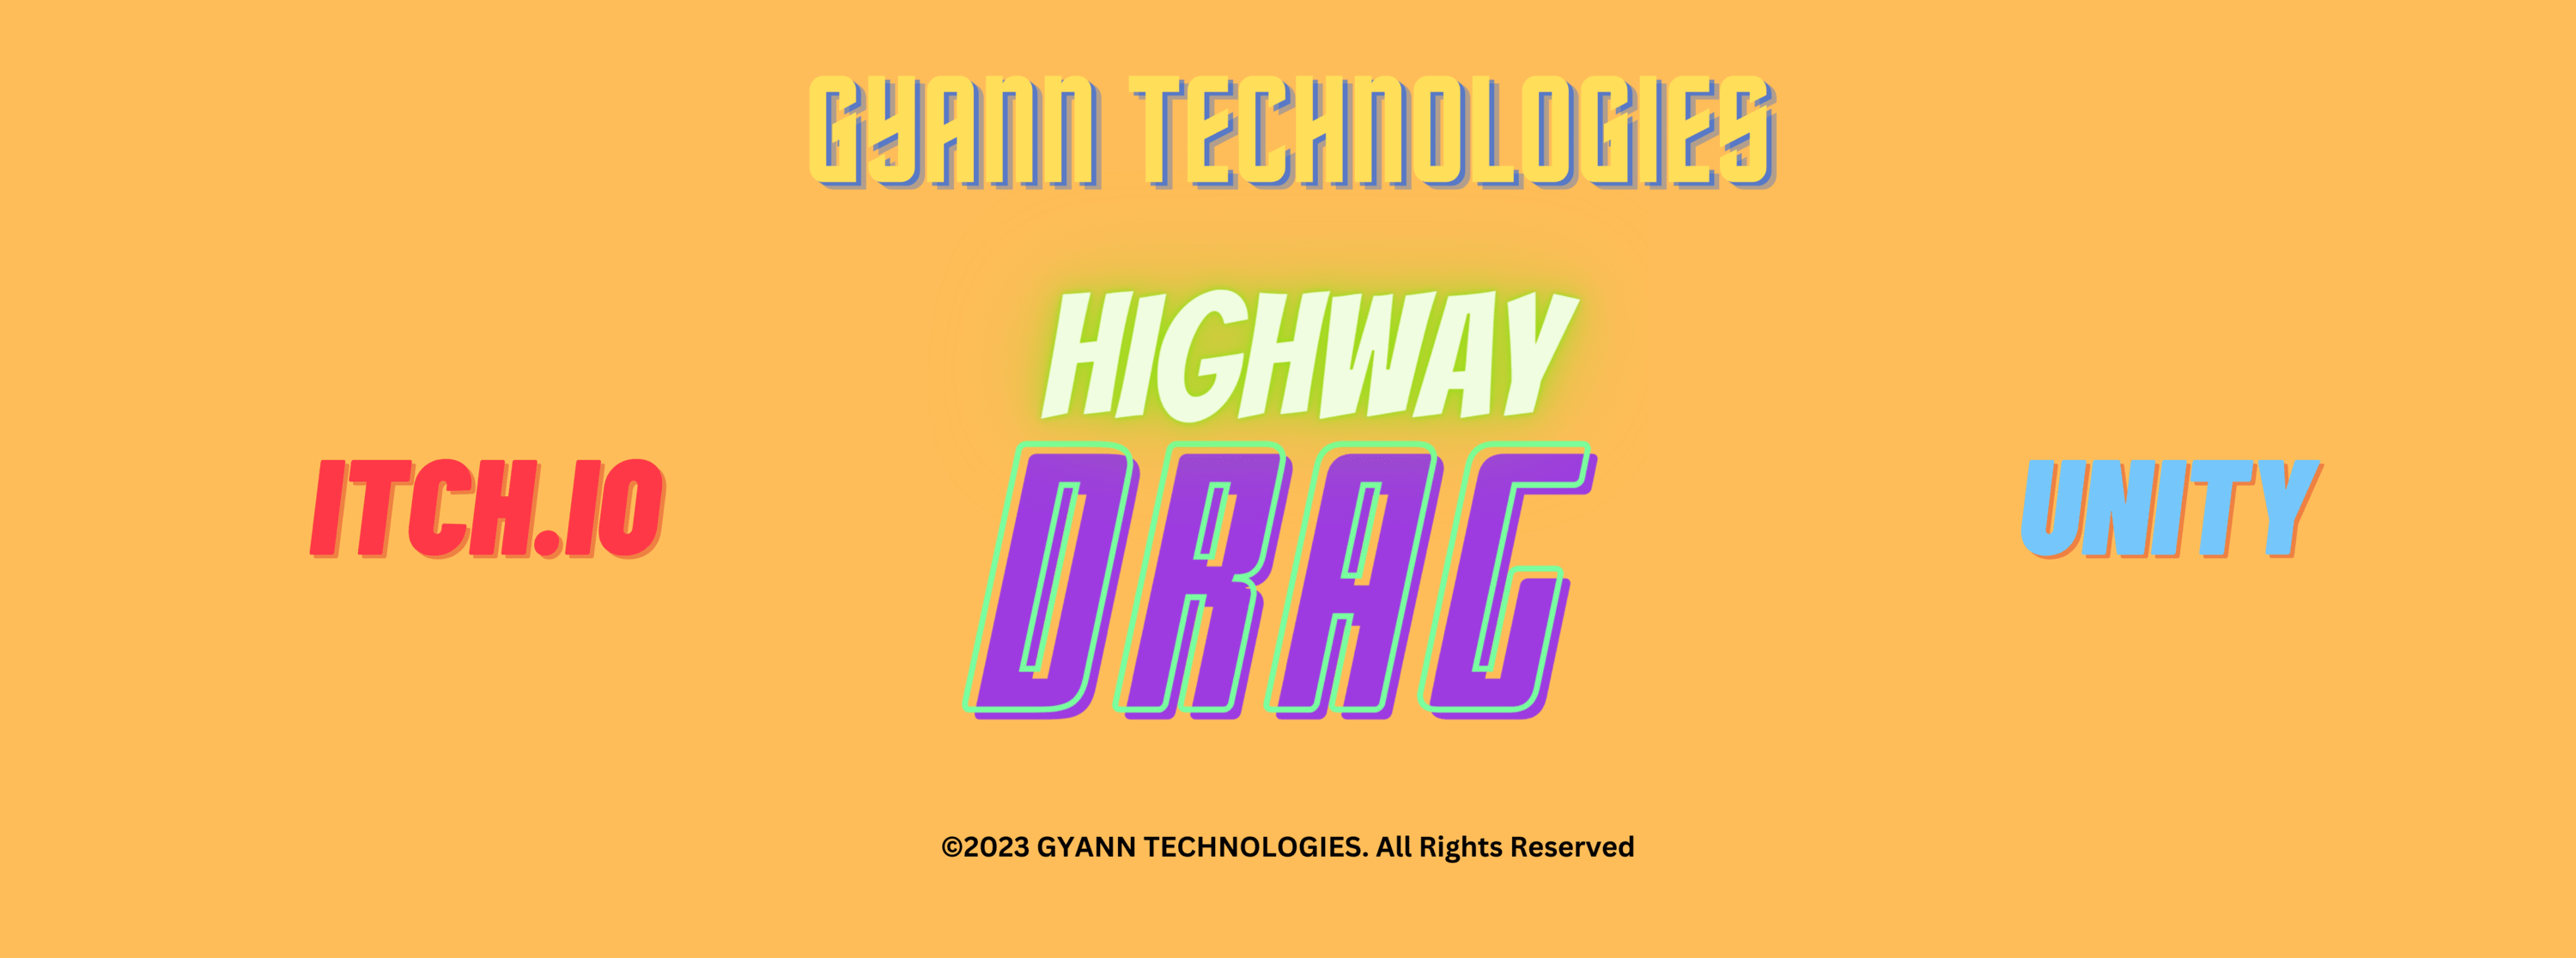 Highway Drag WebGL